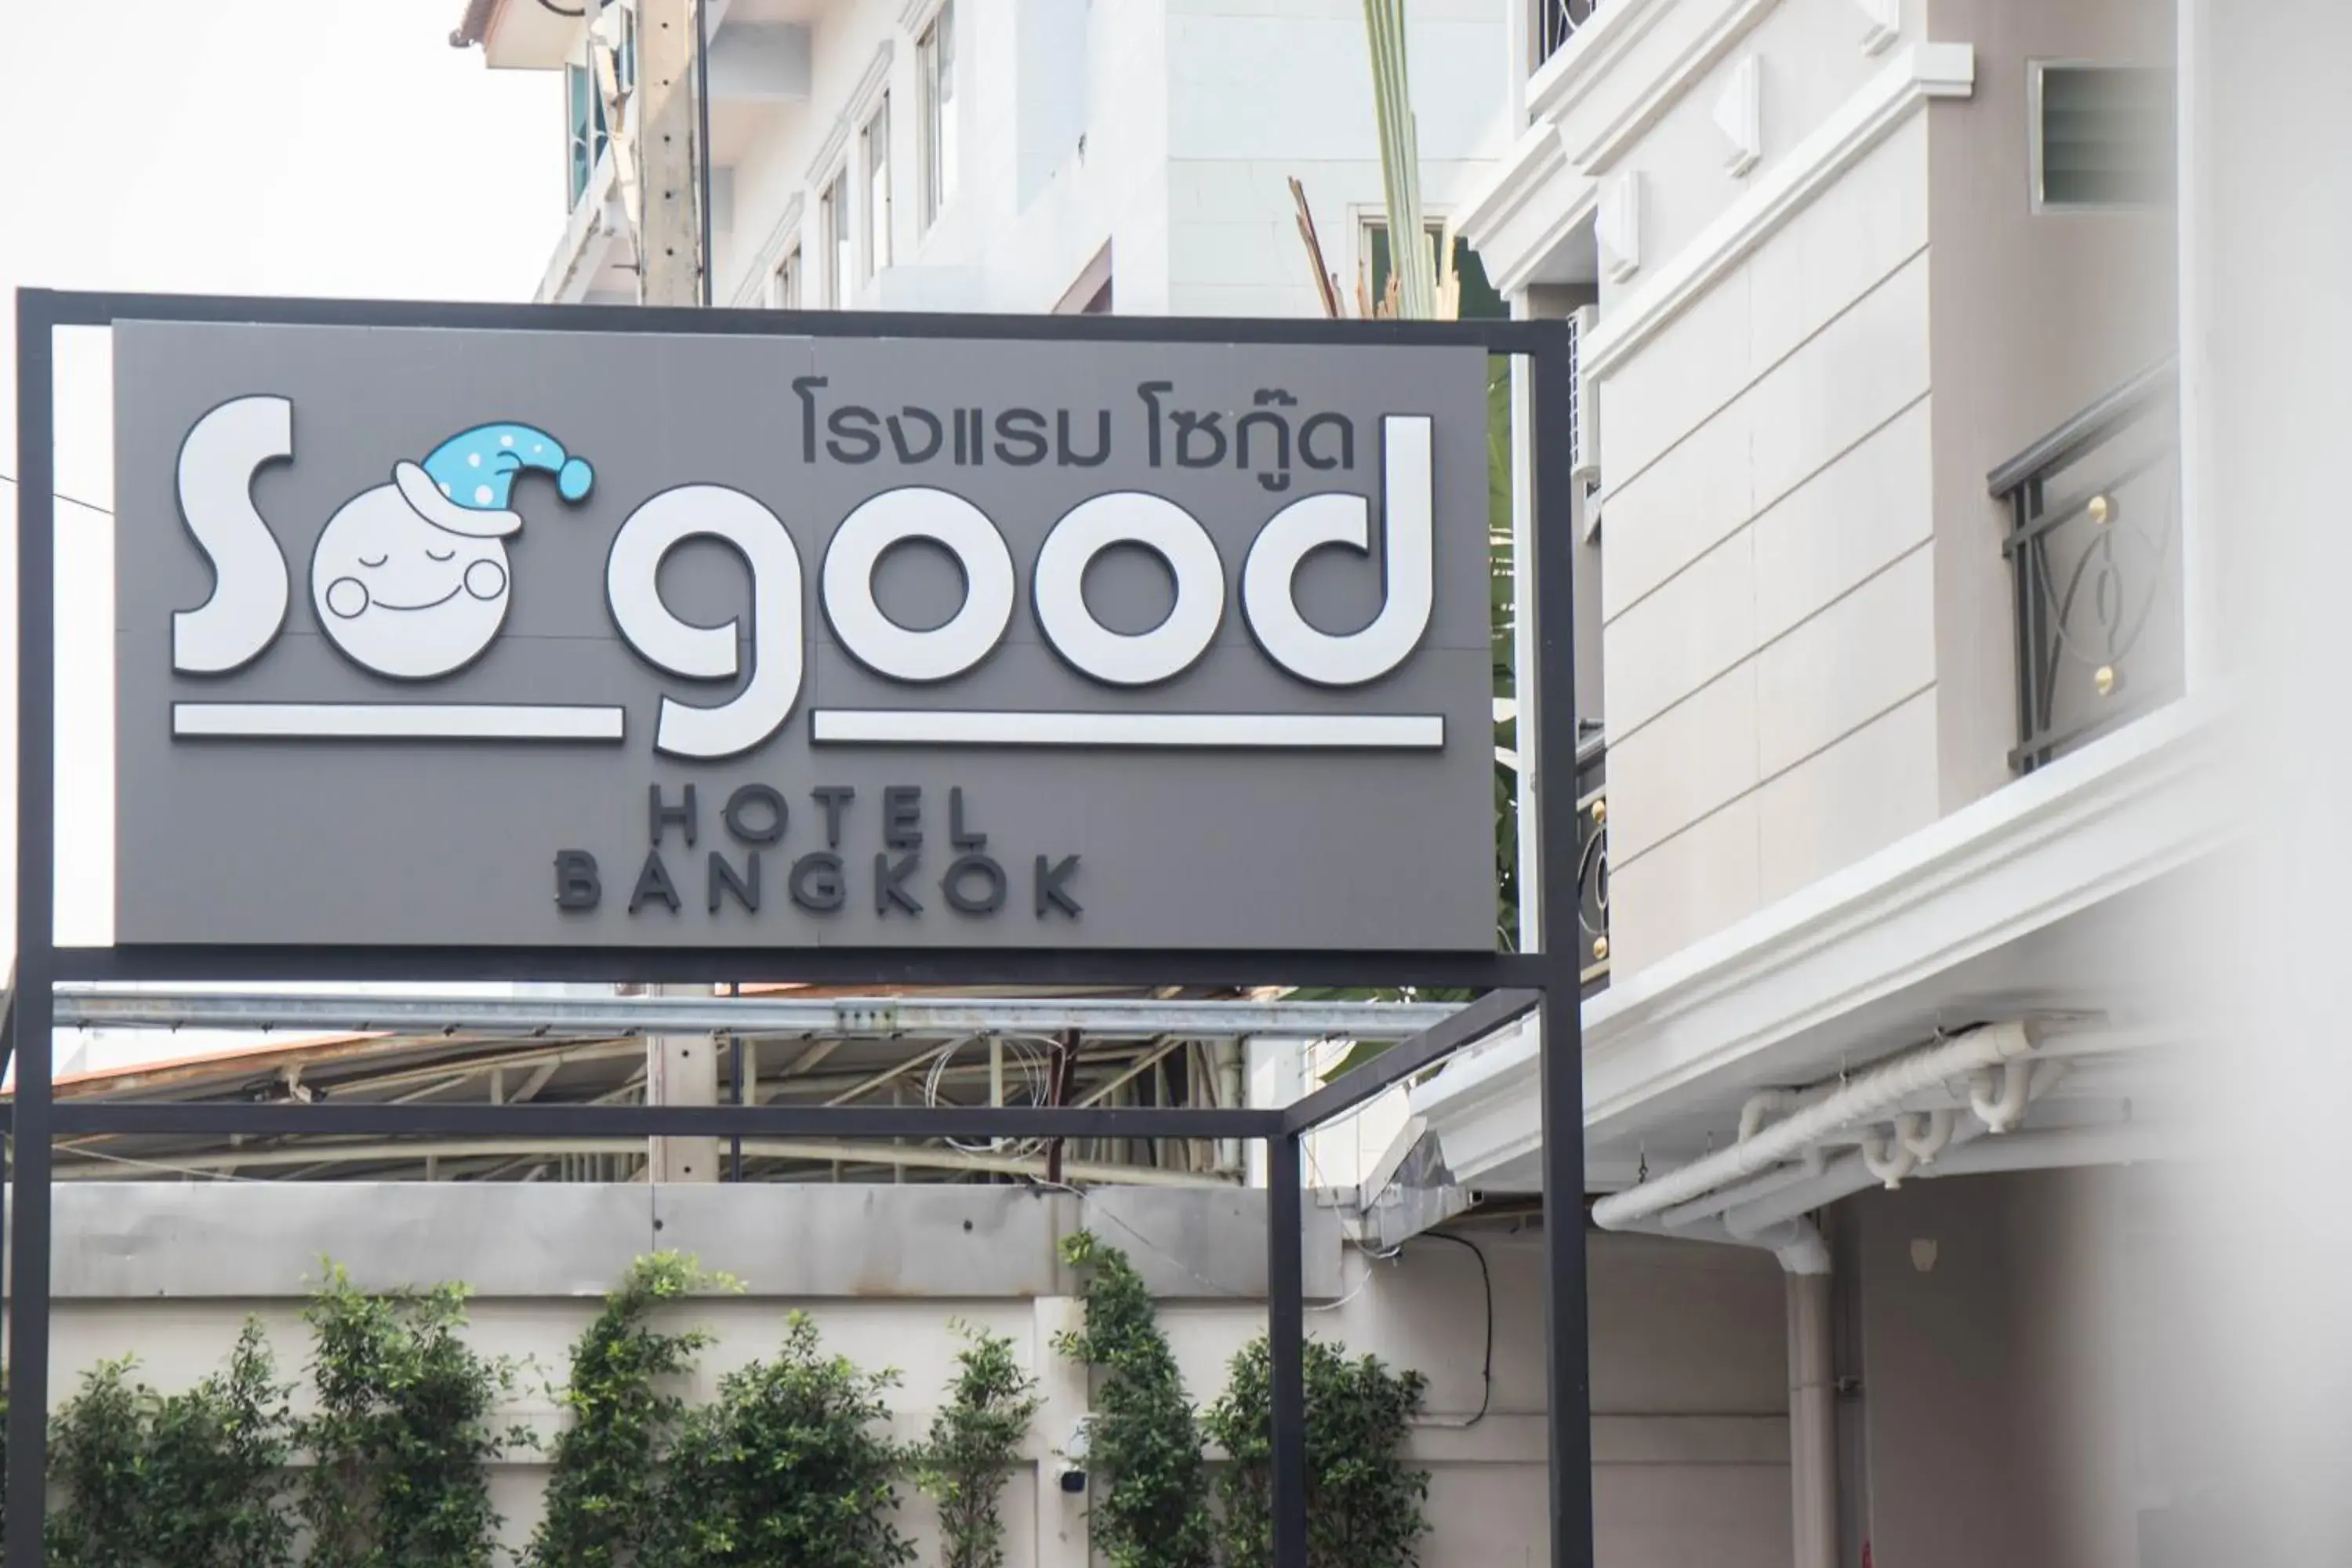 Facade/entrance in So good Hotel Bangkok